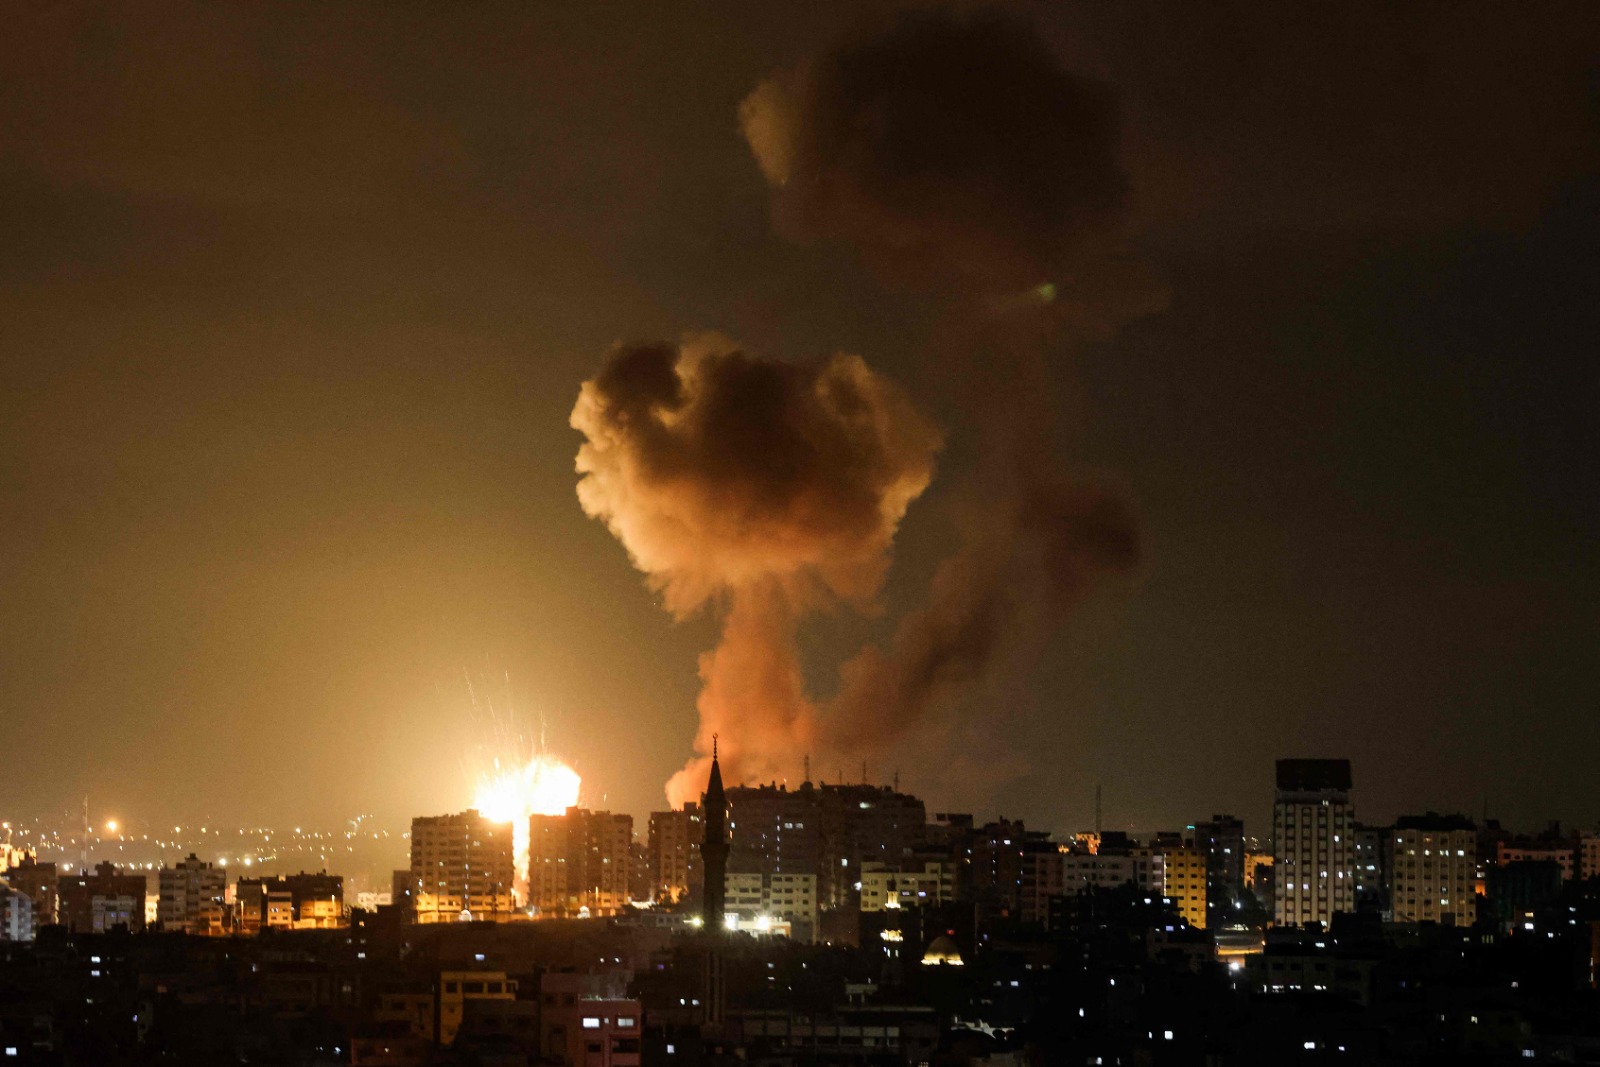 اتفاق على وقف إطلاق النار، صباح اليوم الاربعاء، بعد ليلة من القصف المتبادل بين إسرائيل والفصائل الفلسطينية في غزة